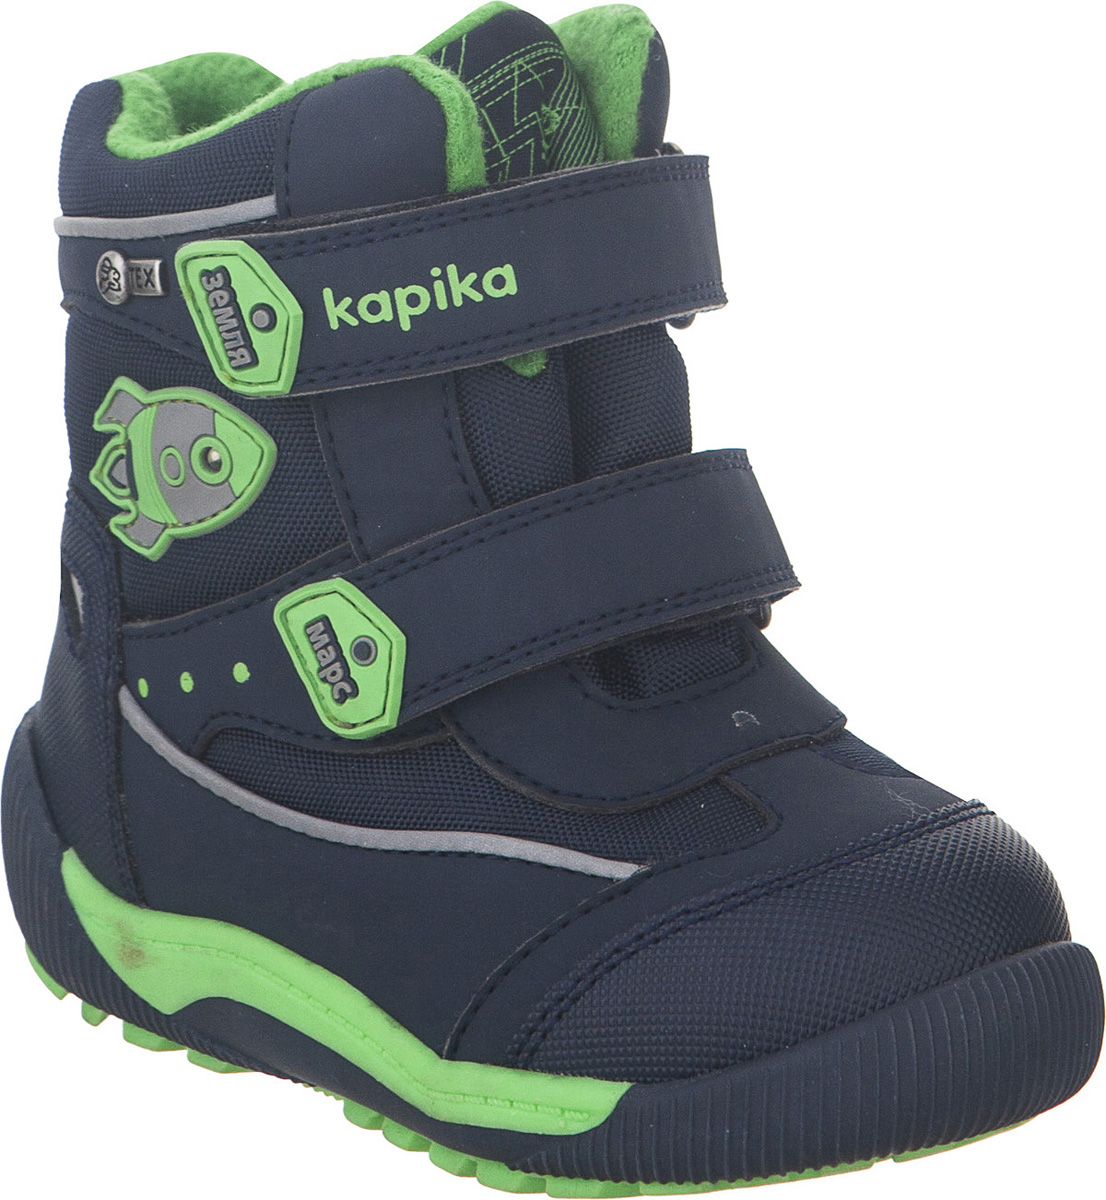 Ботинки для мальчика Kapika KapiTEX, цвет: темно-синий. 41207-2. Размер 22